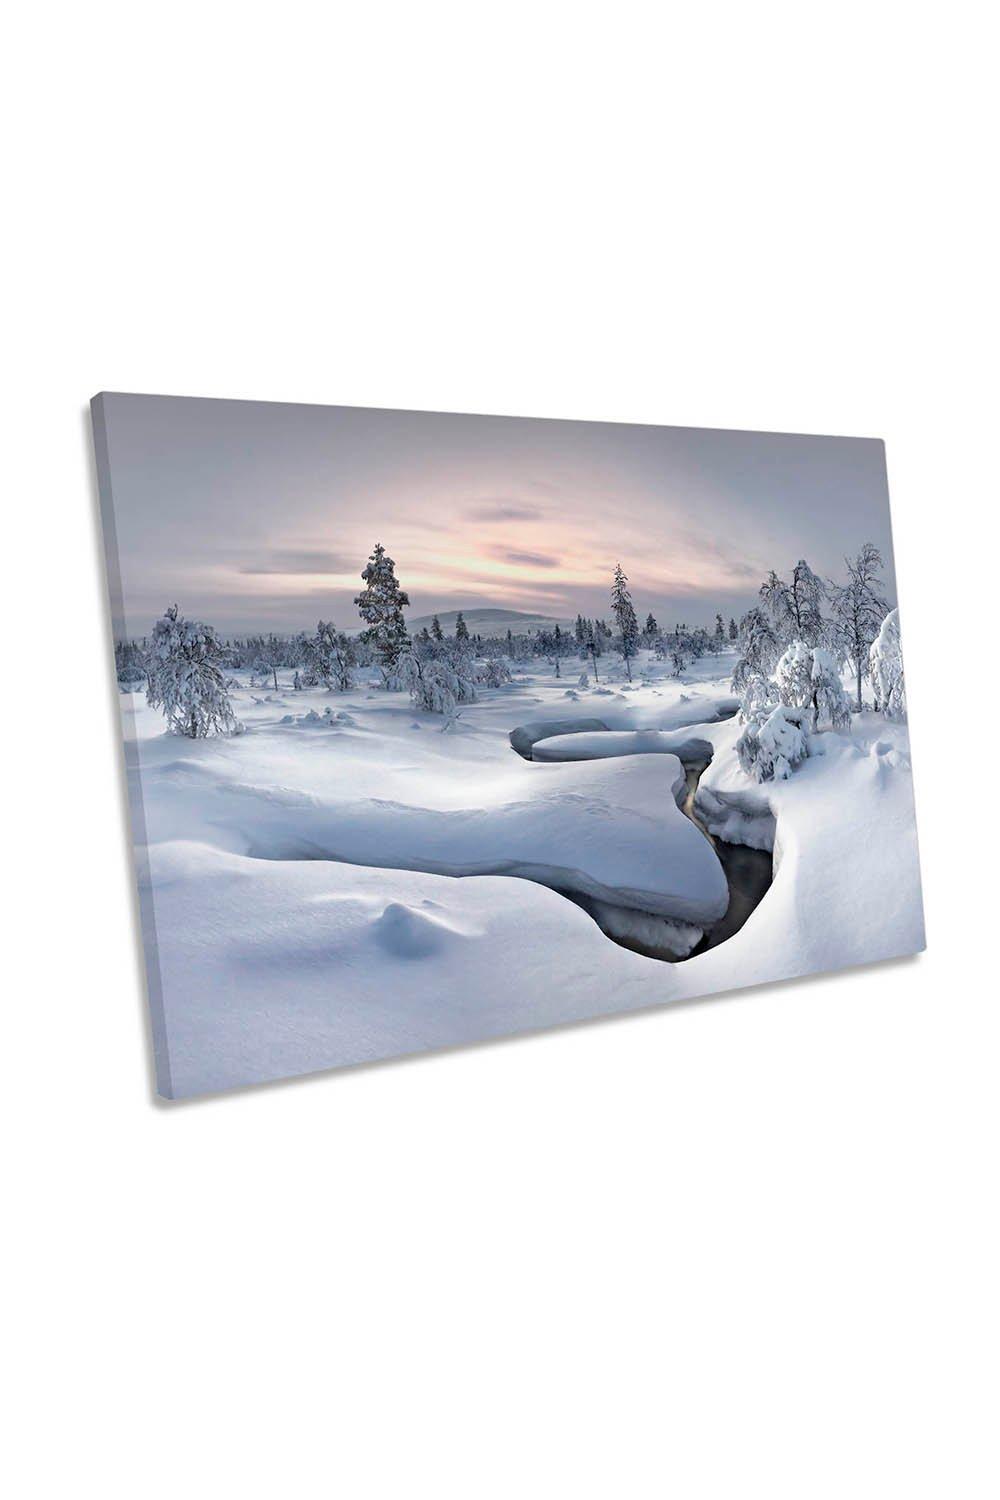 Lapland Winter Snow Landscape Canvas Wall Art Picture Print